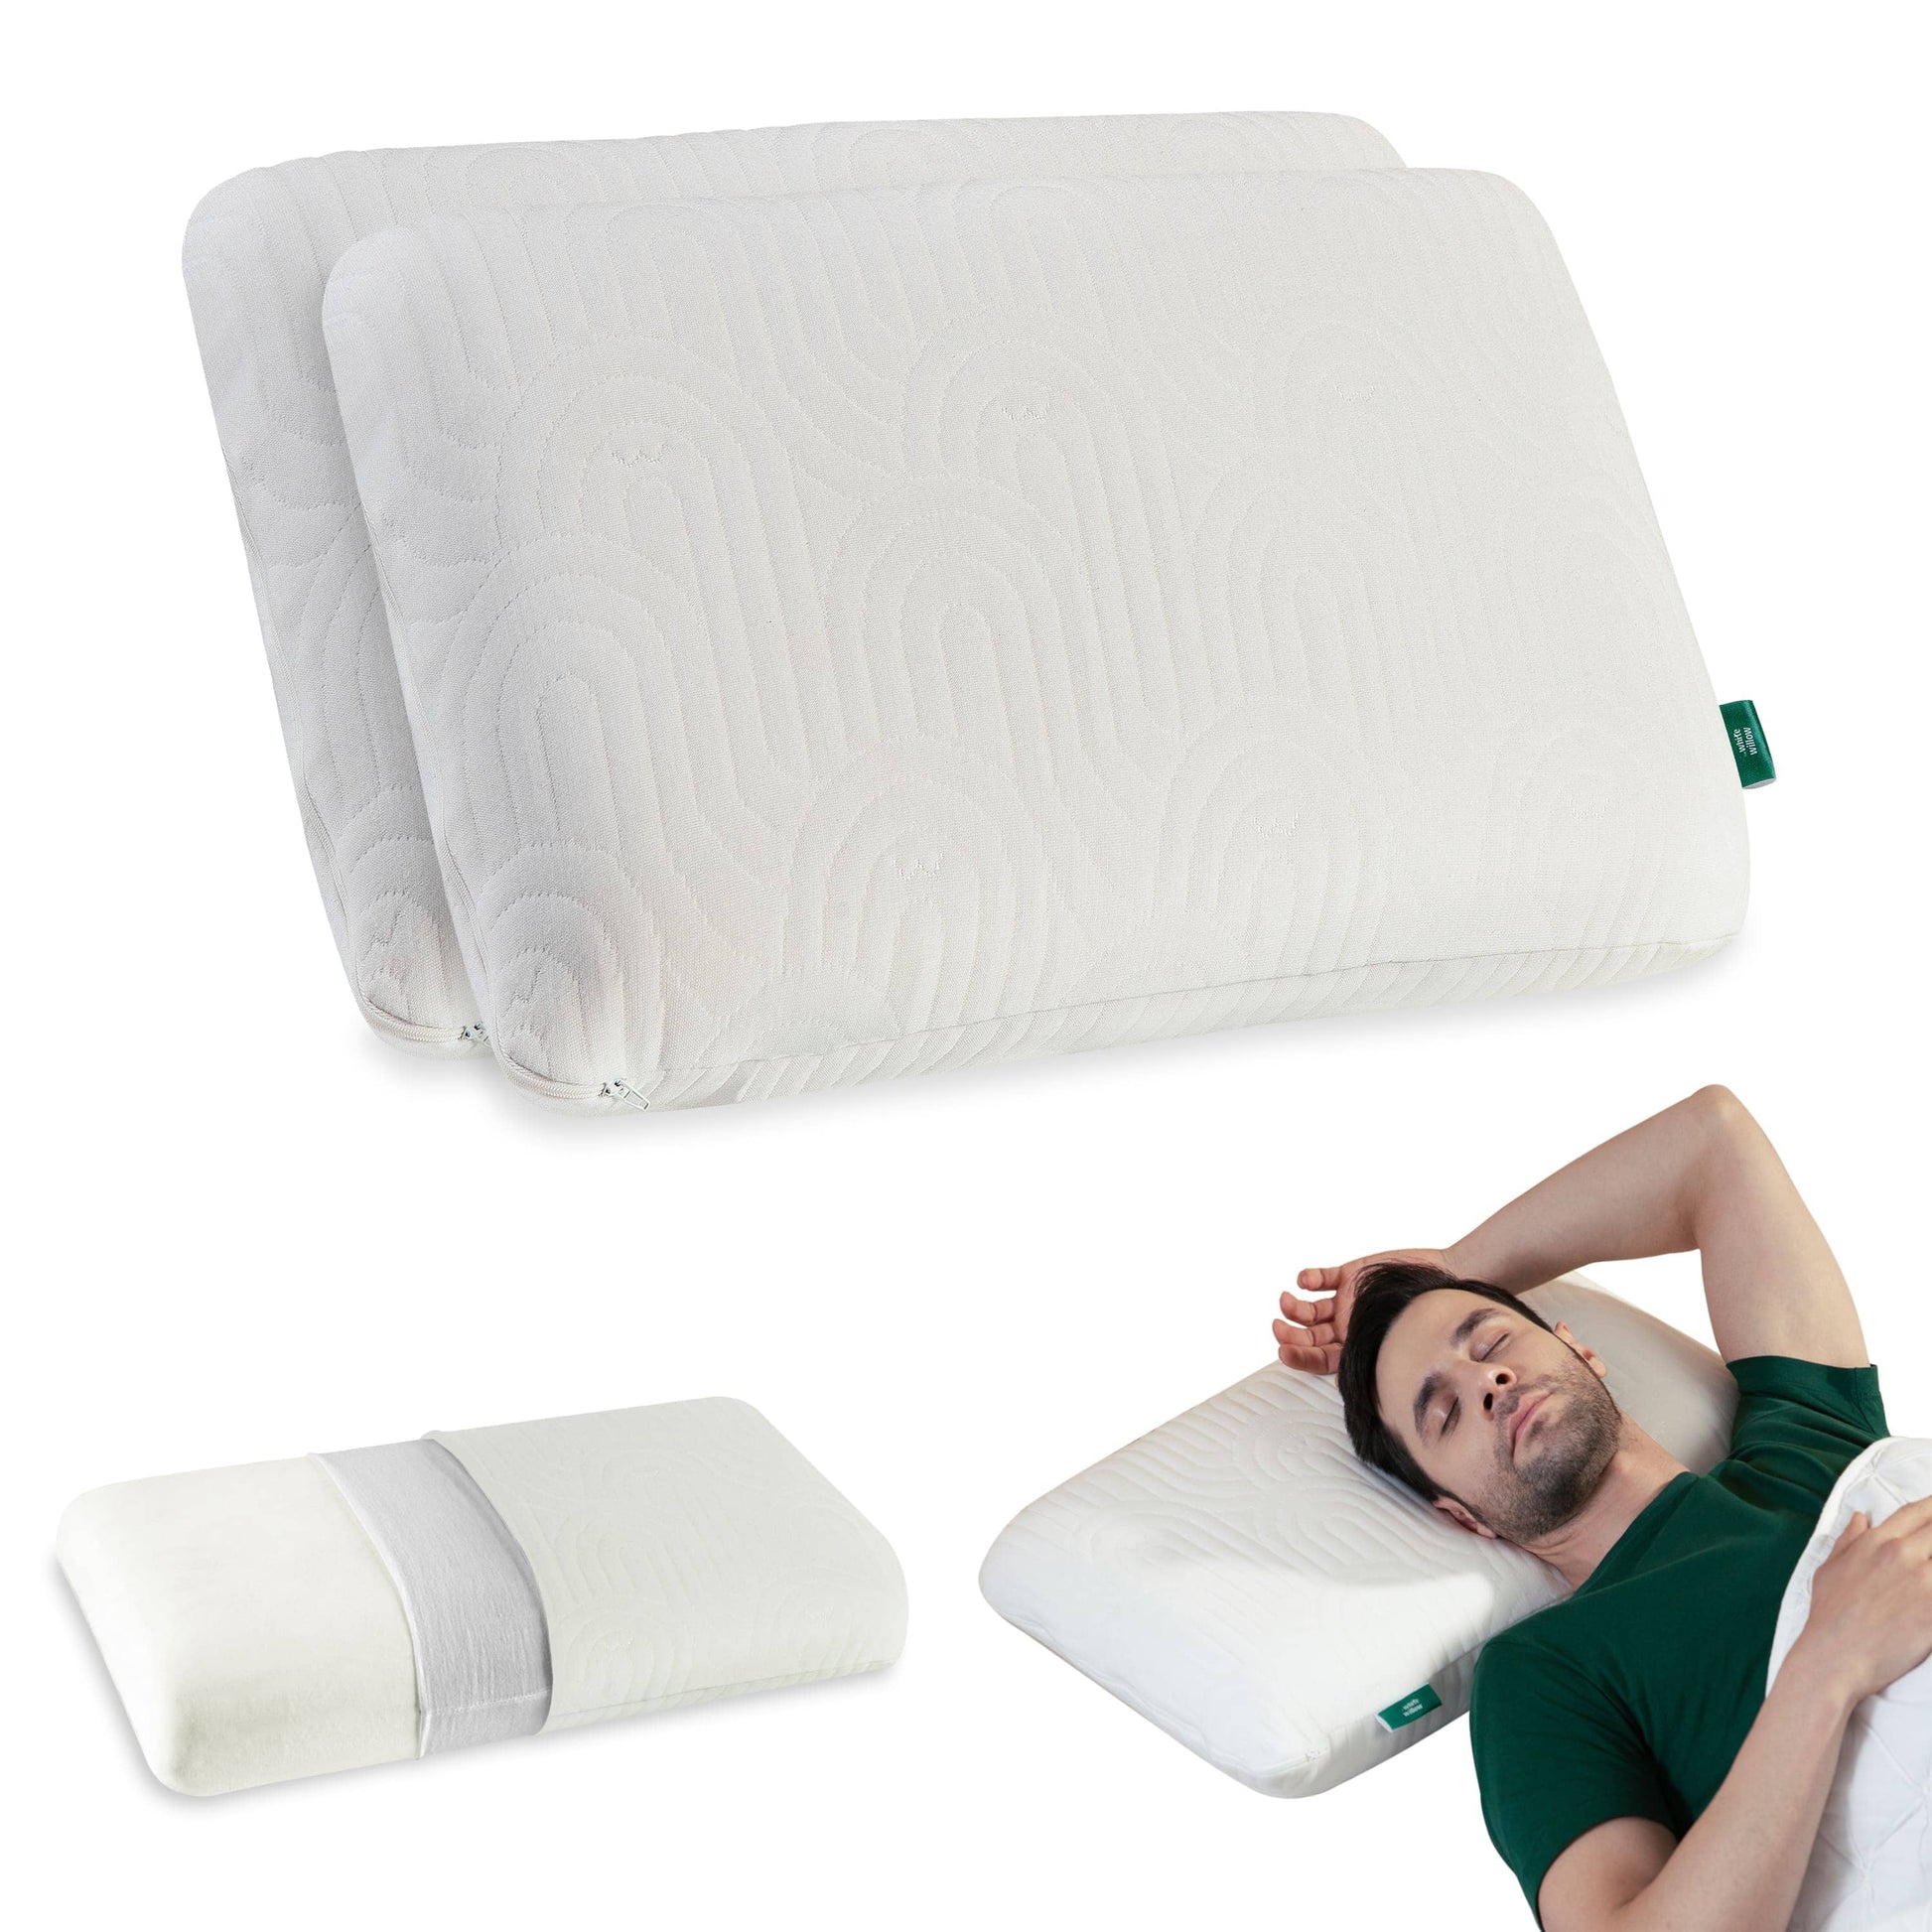 Cypress - Memory Foam Pillow - Regular - Medium Firm Regular Pillow The White Willow Medium 4"H Standard 22x14 Pack of 2 Multi